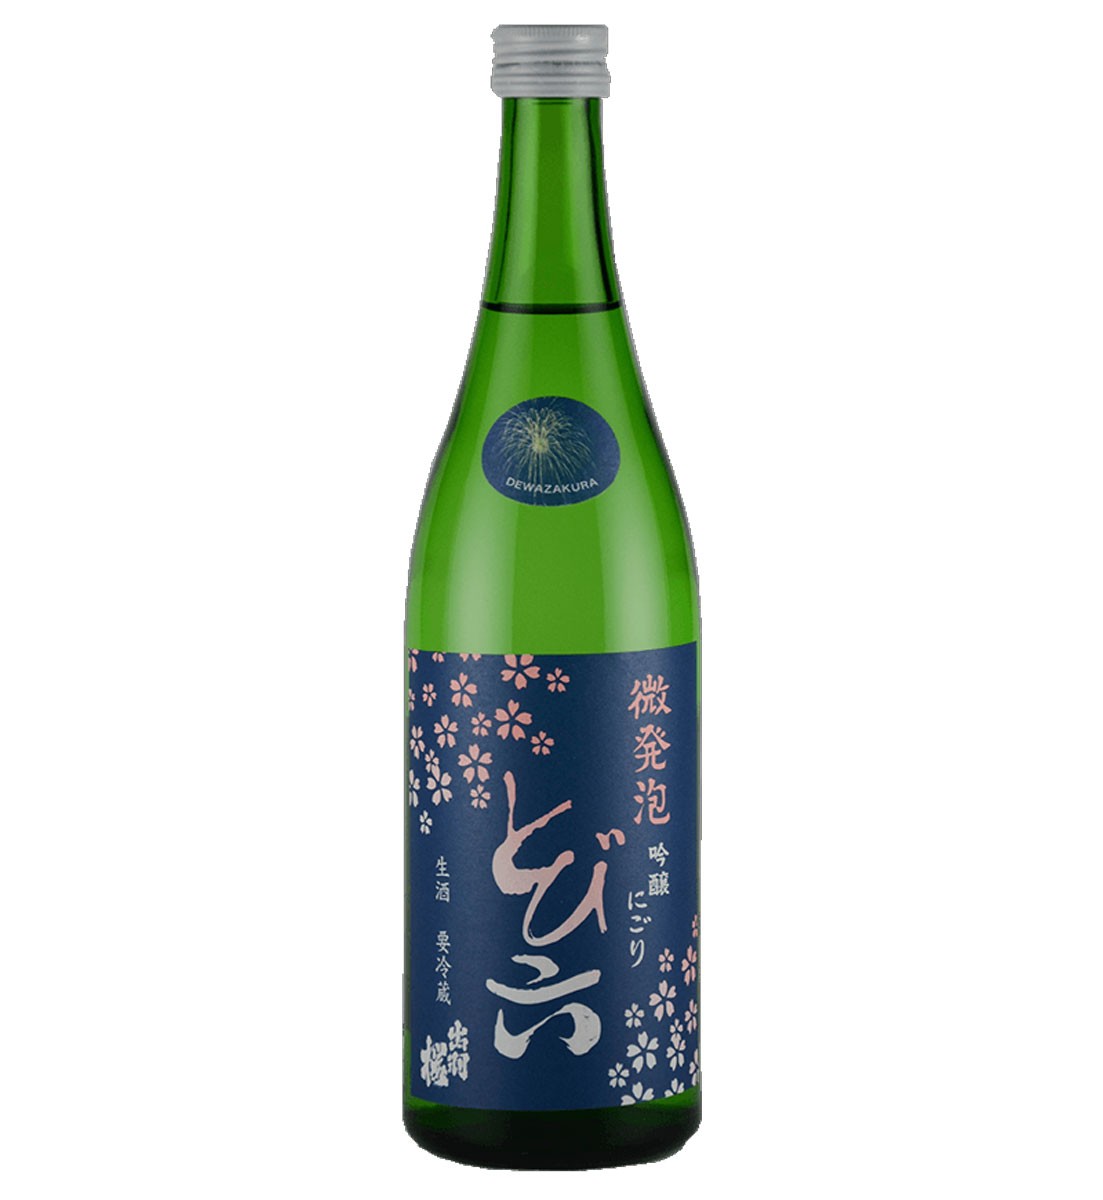 出羽桜 とび六 吟醸 にごり 微発泡 生酒 720mlの商品画像